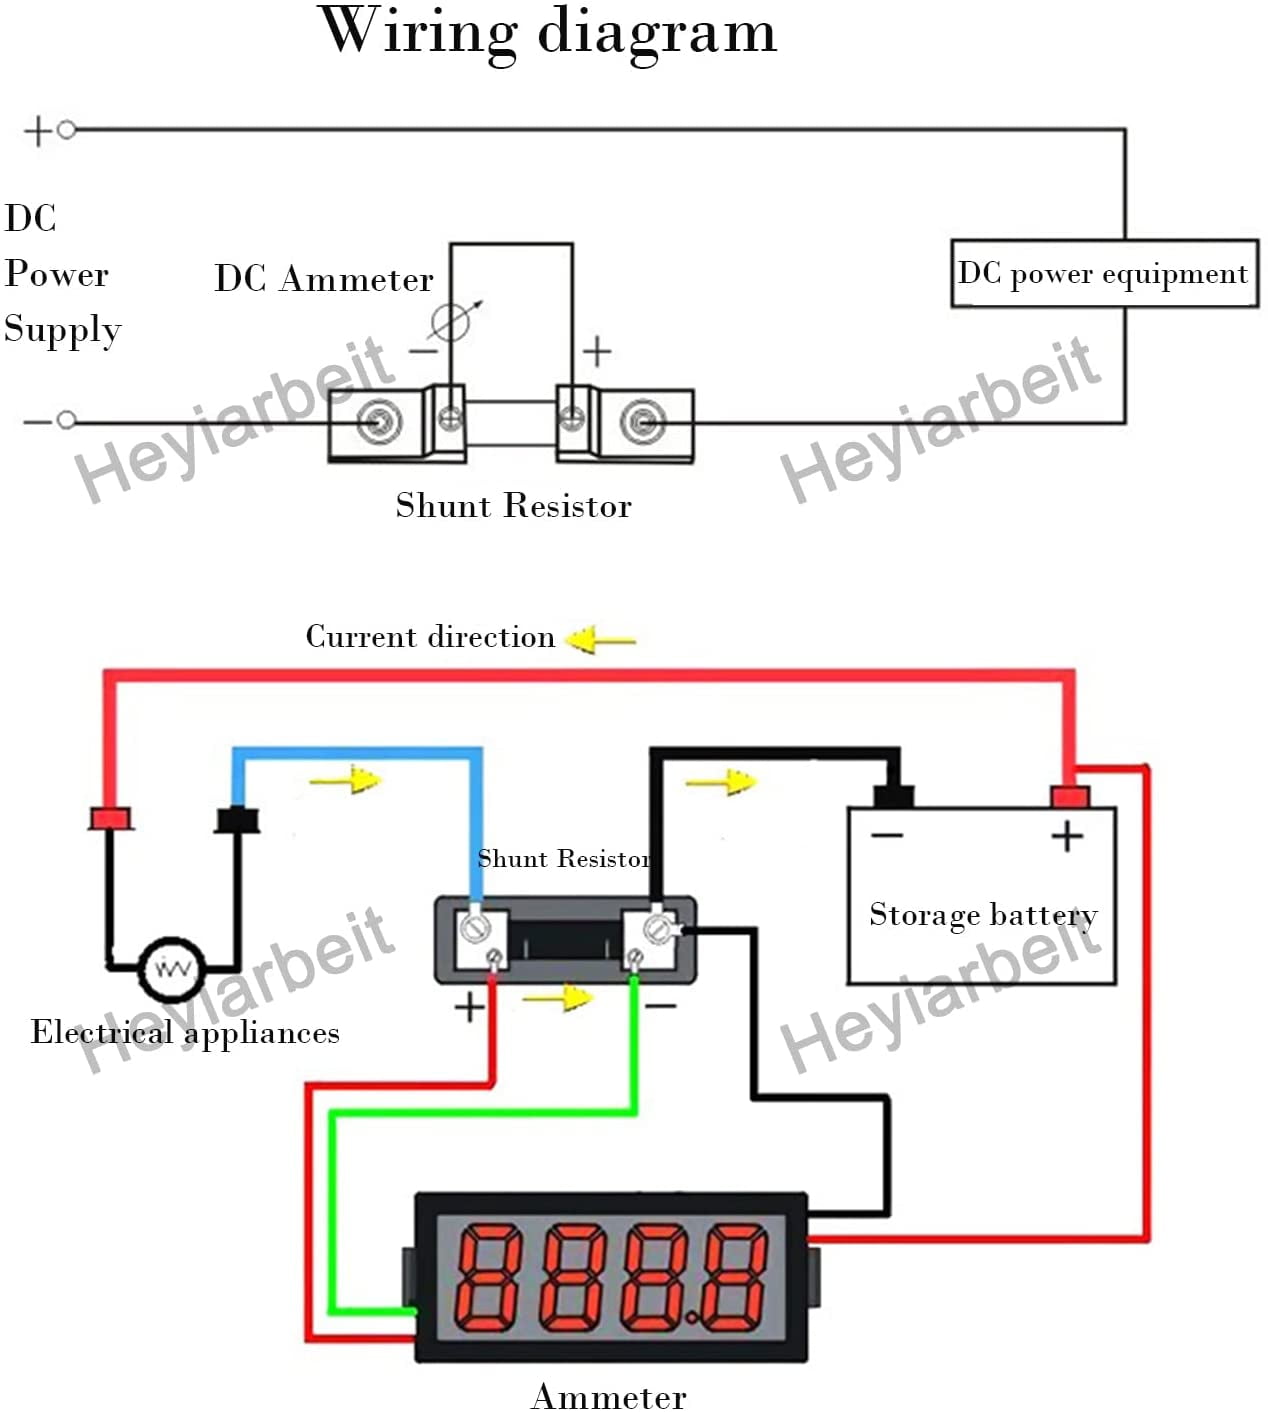 Heyiarbeit 1500A 75mV DC Current Meter Shunt Resistor Resistance for DC Ammeter Shunt FL-19 1Pcs 